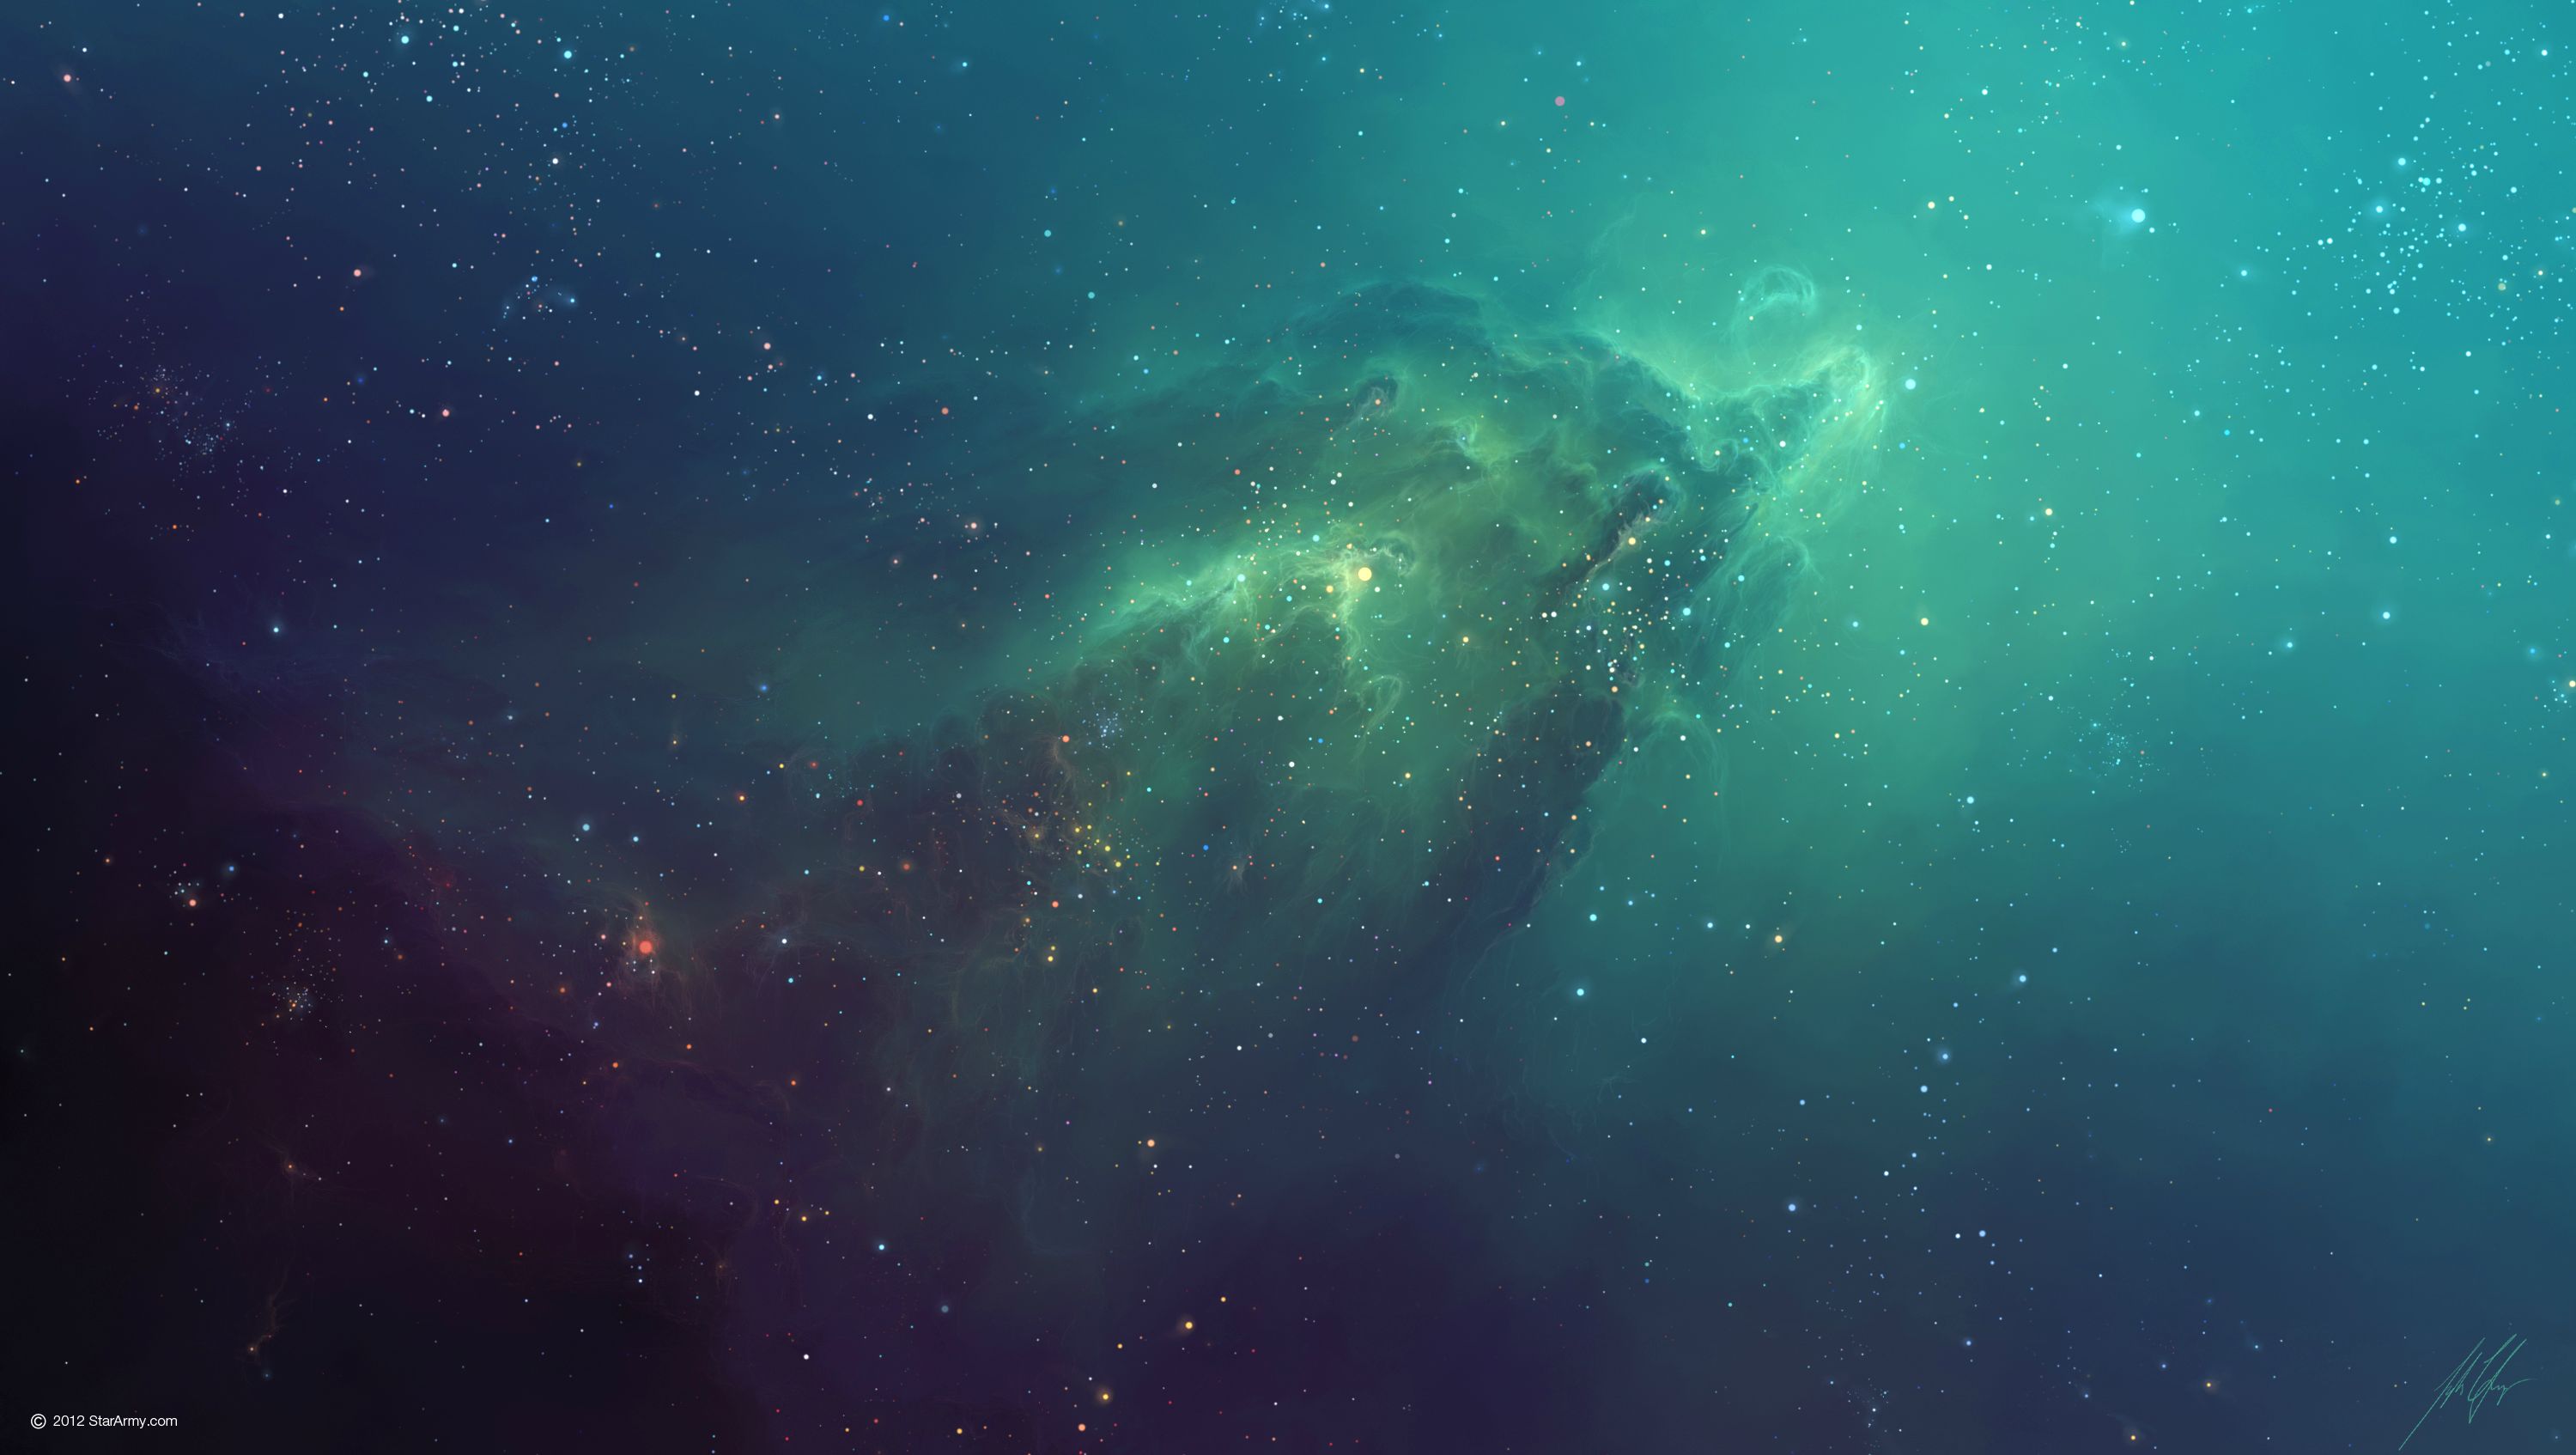 An image of a nebula